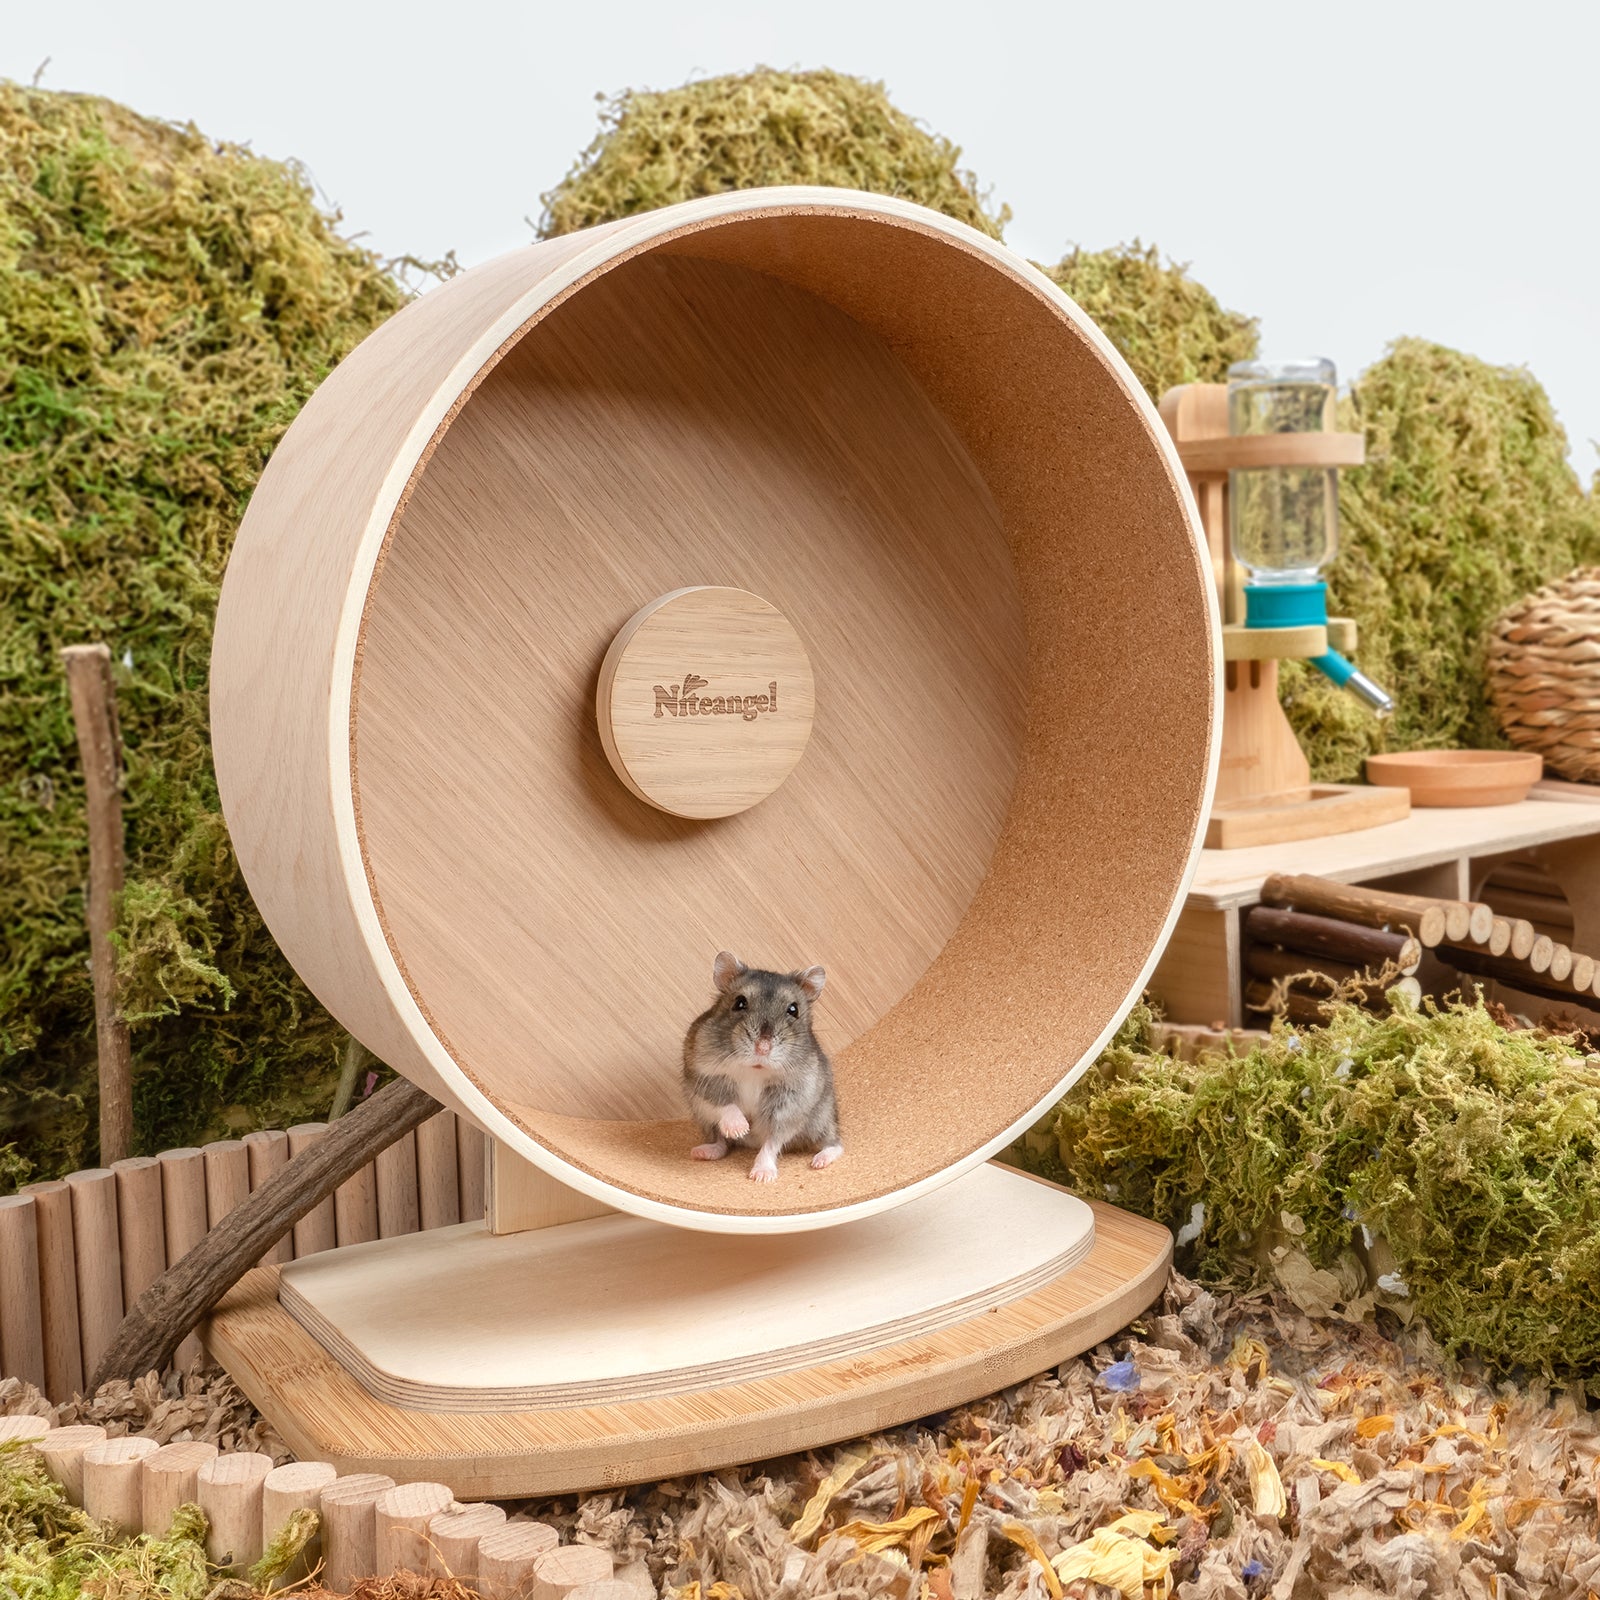 Niteangel Wooden Hamster Exercise Wheel - Niteangel Pet CA